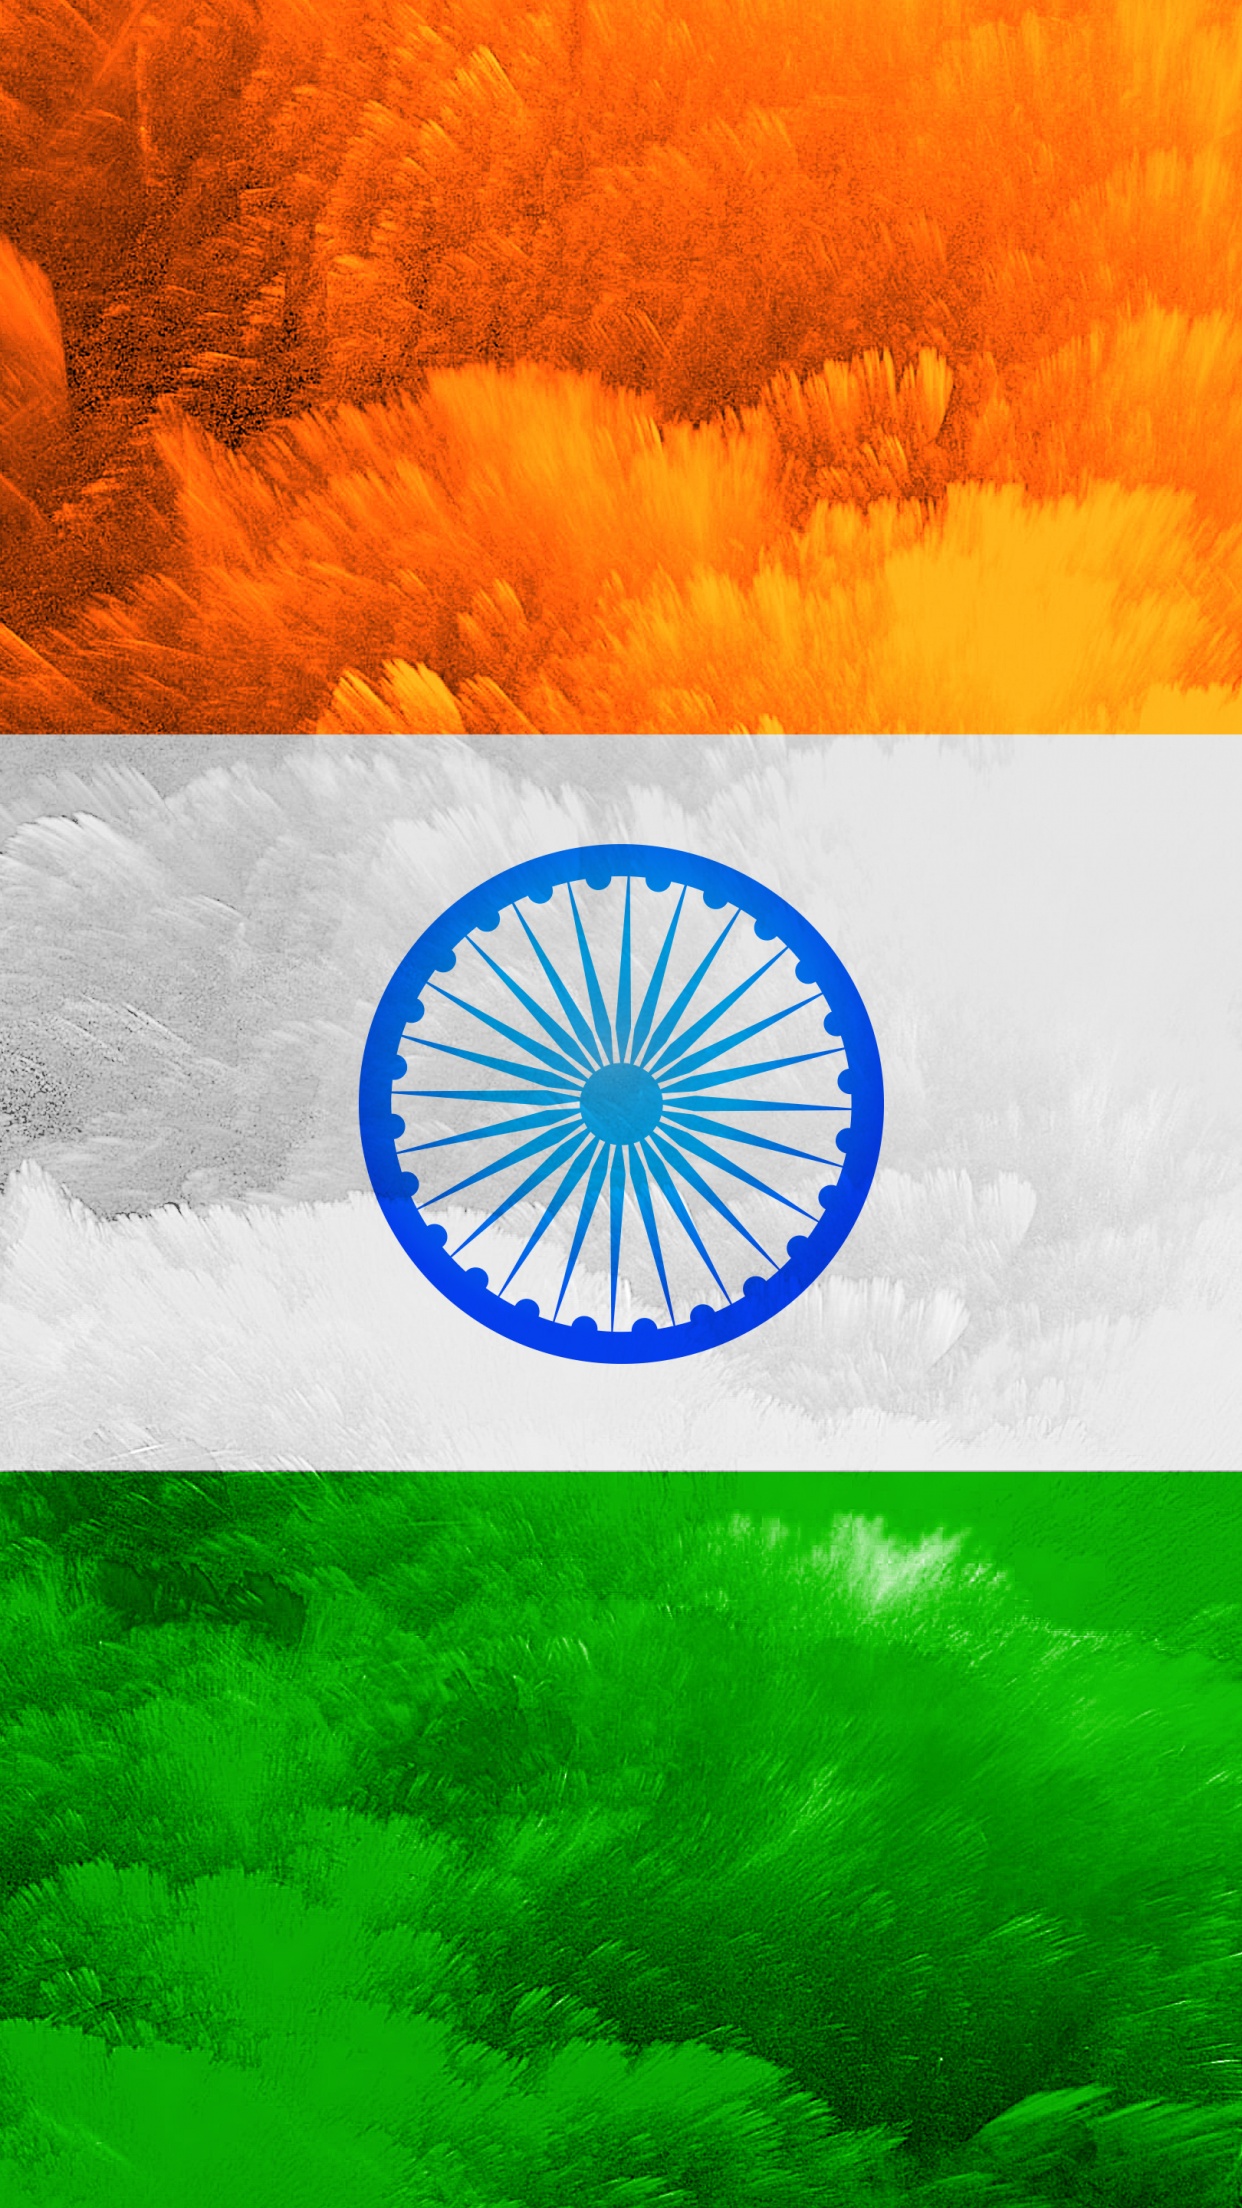 Indian Flag 4K Wallpaper, Tricolour Flag, National Flag